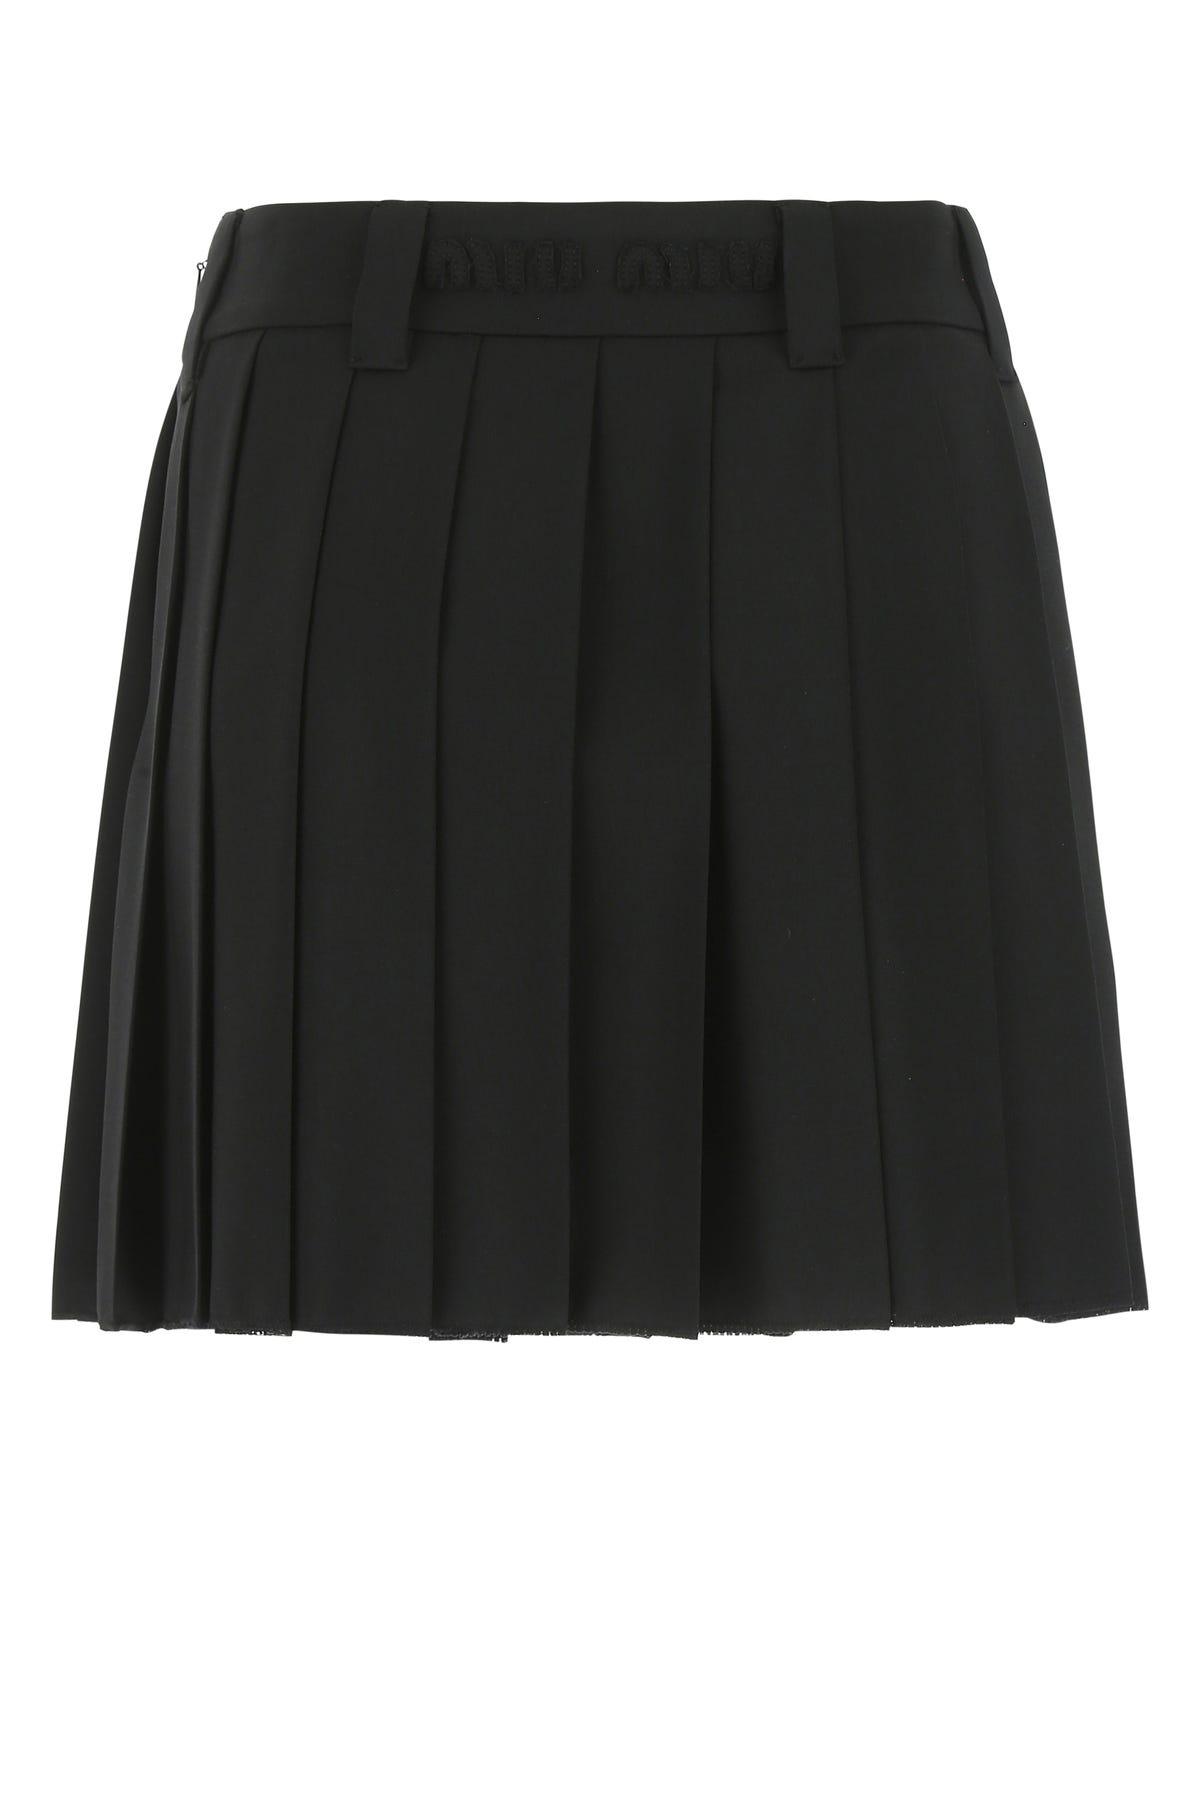 Miu Miu Logo Waistband Pleated Mini Skirt in Black | Lyst